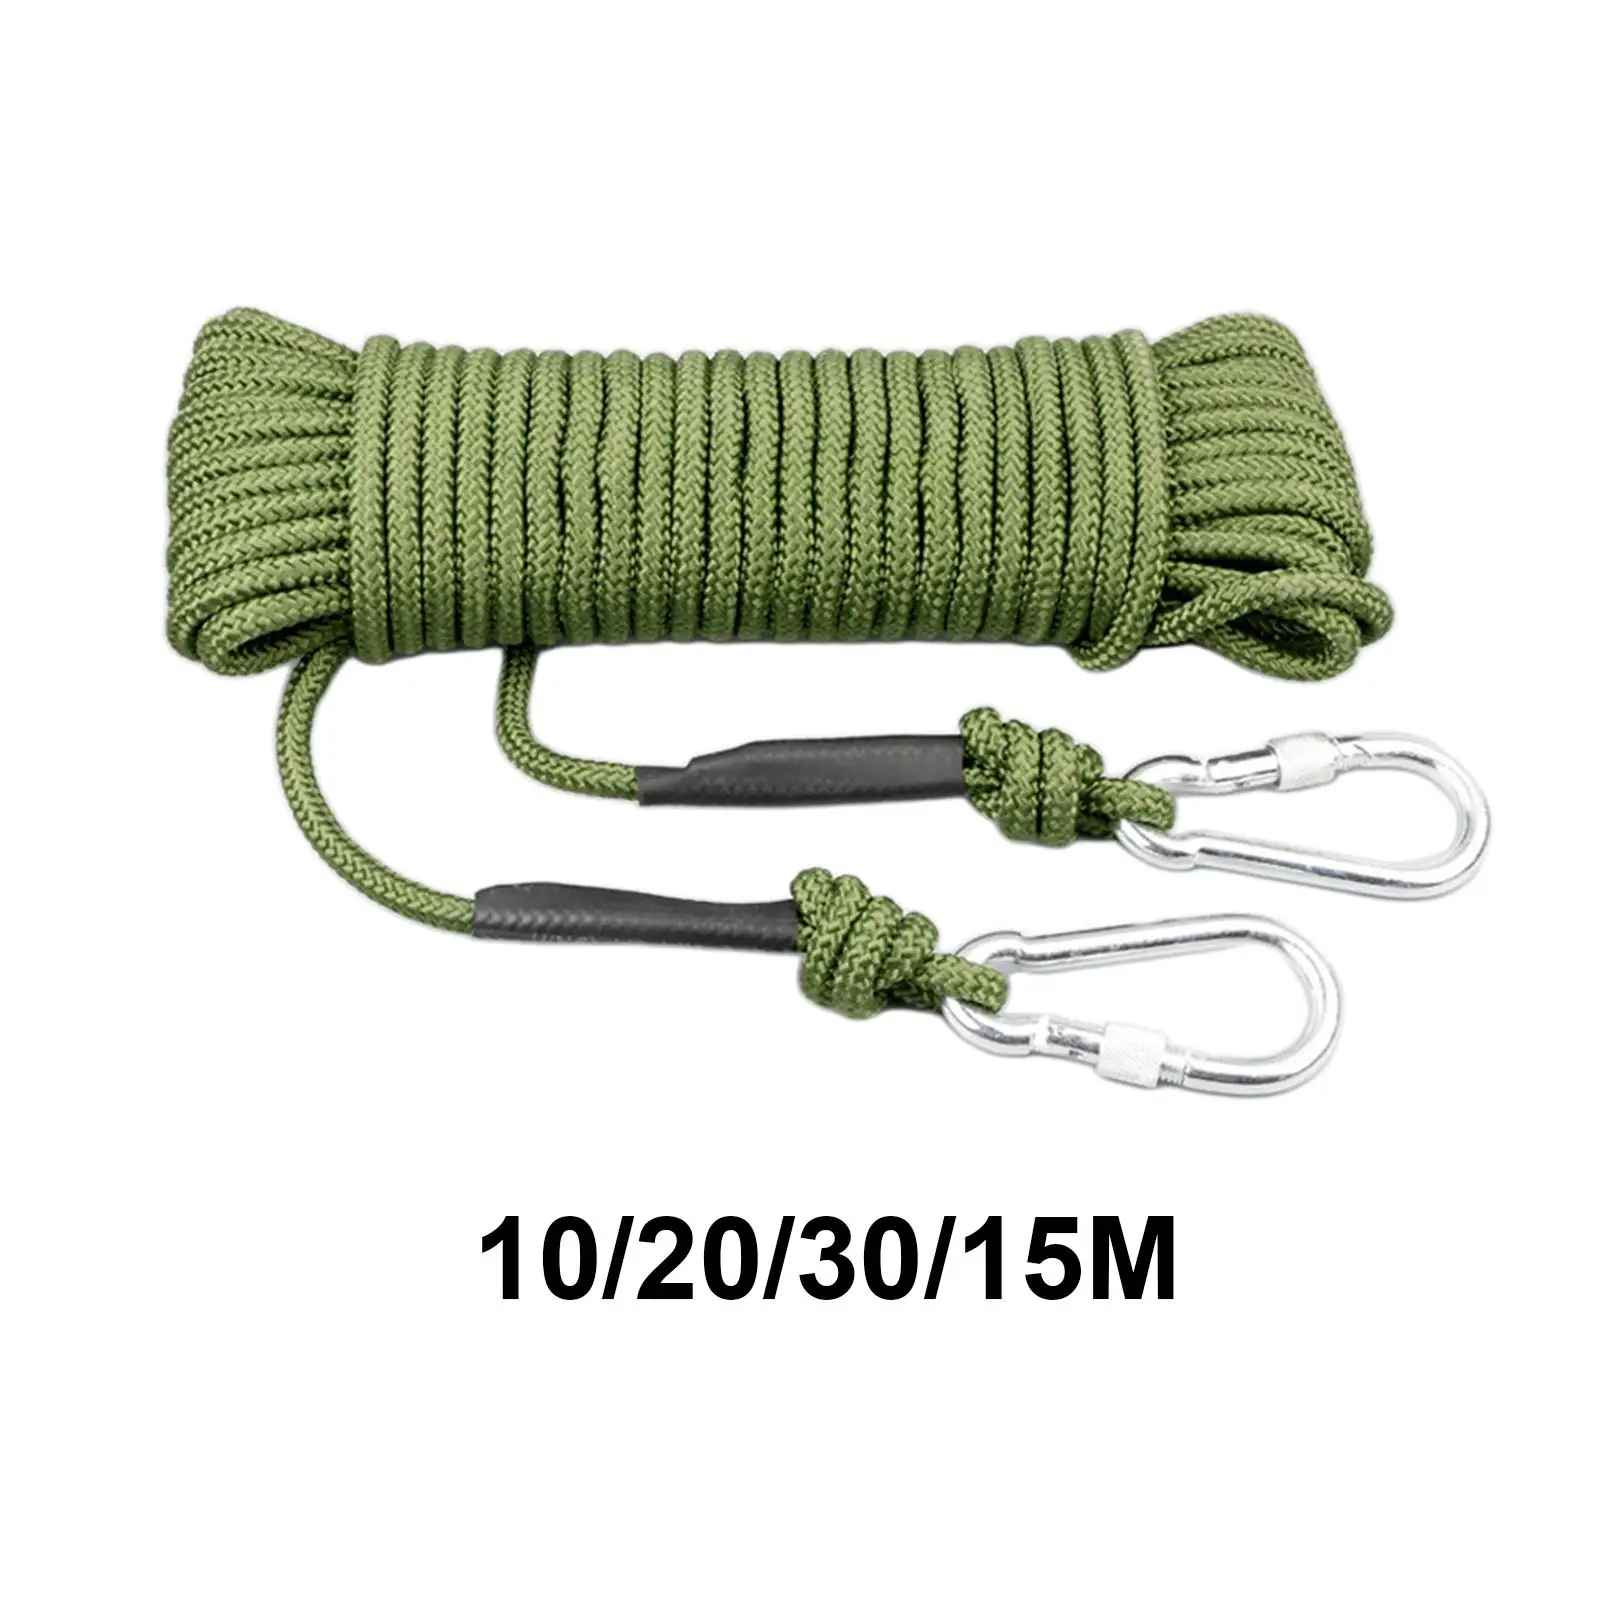 

Парашютный шнур, износостойкая веревка 8 мм для скалолазания, походов, скалолазания по льду